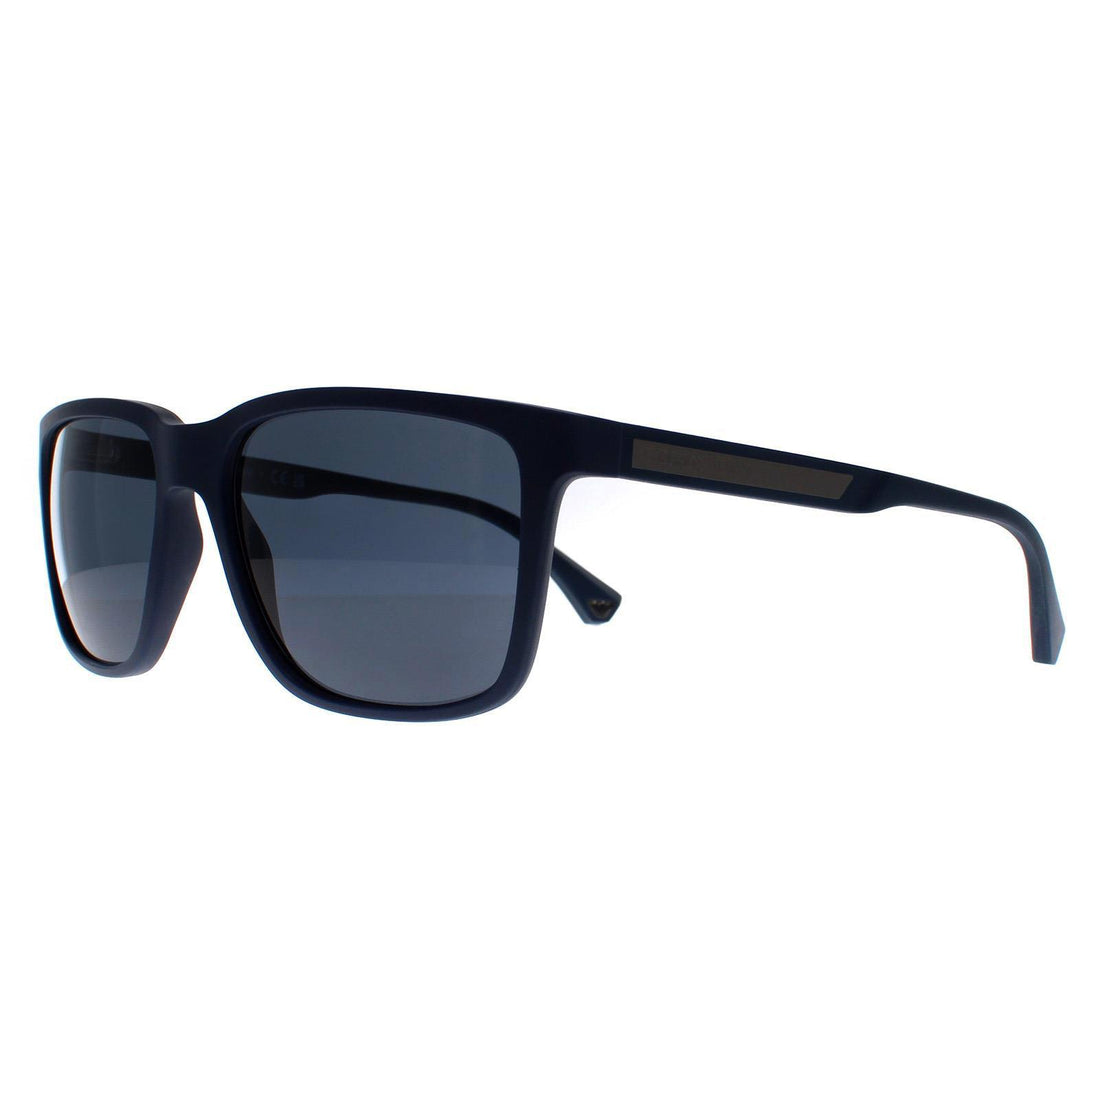 Emporio Armani Sunglasses EA4047 508880 Matte Blue Dark Blue